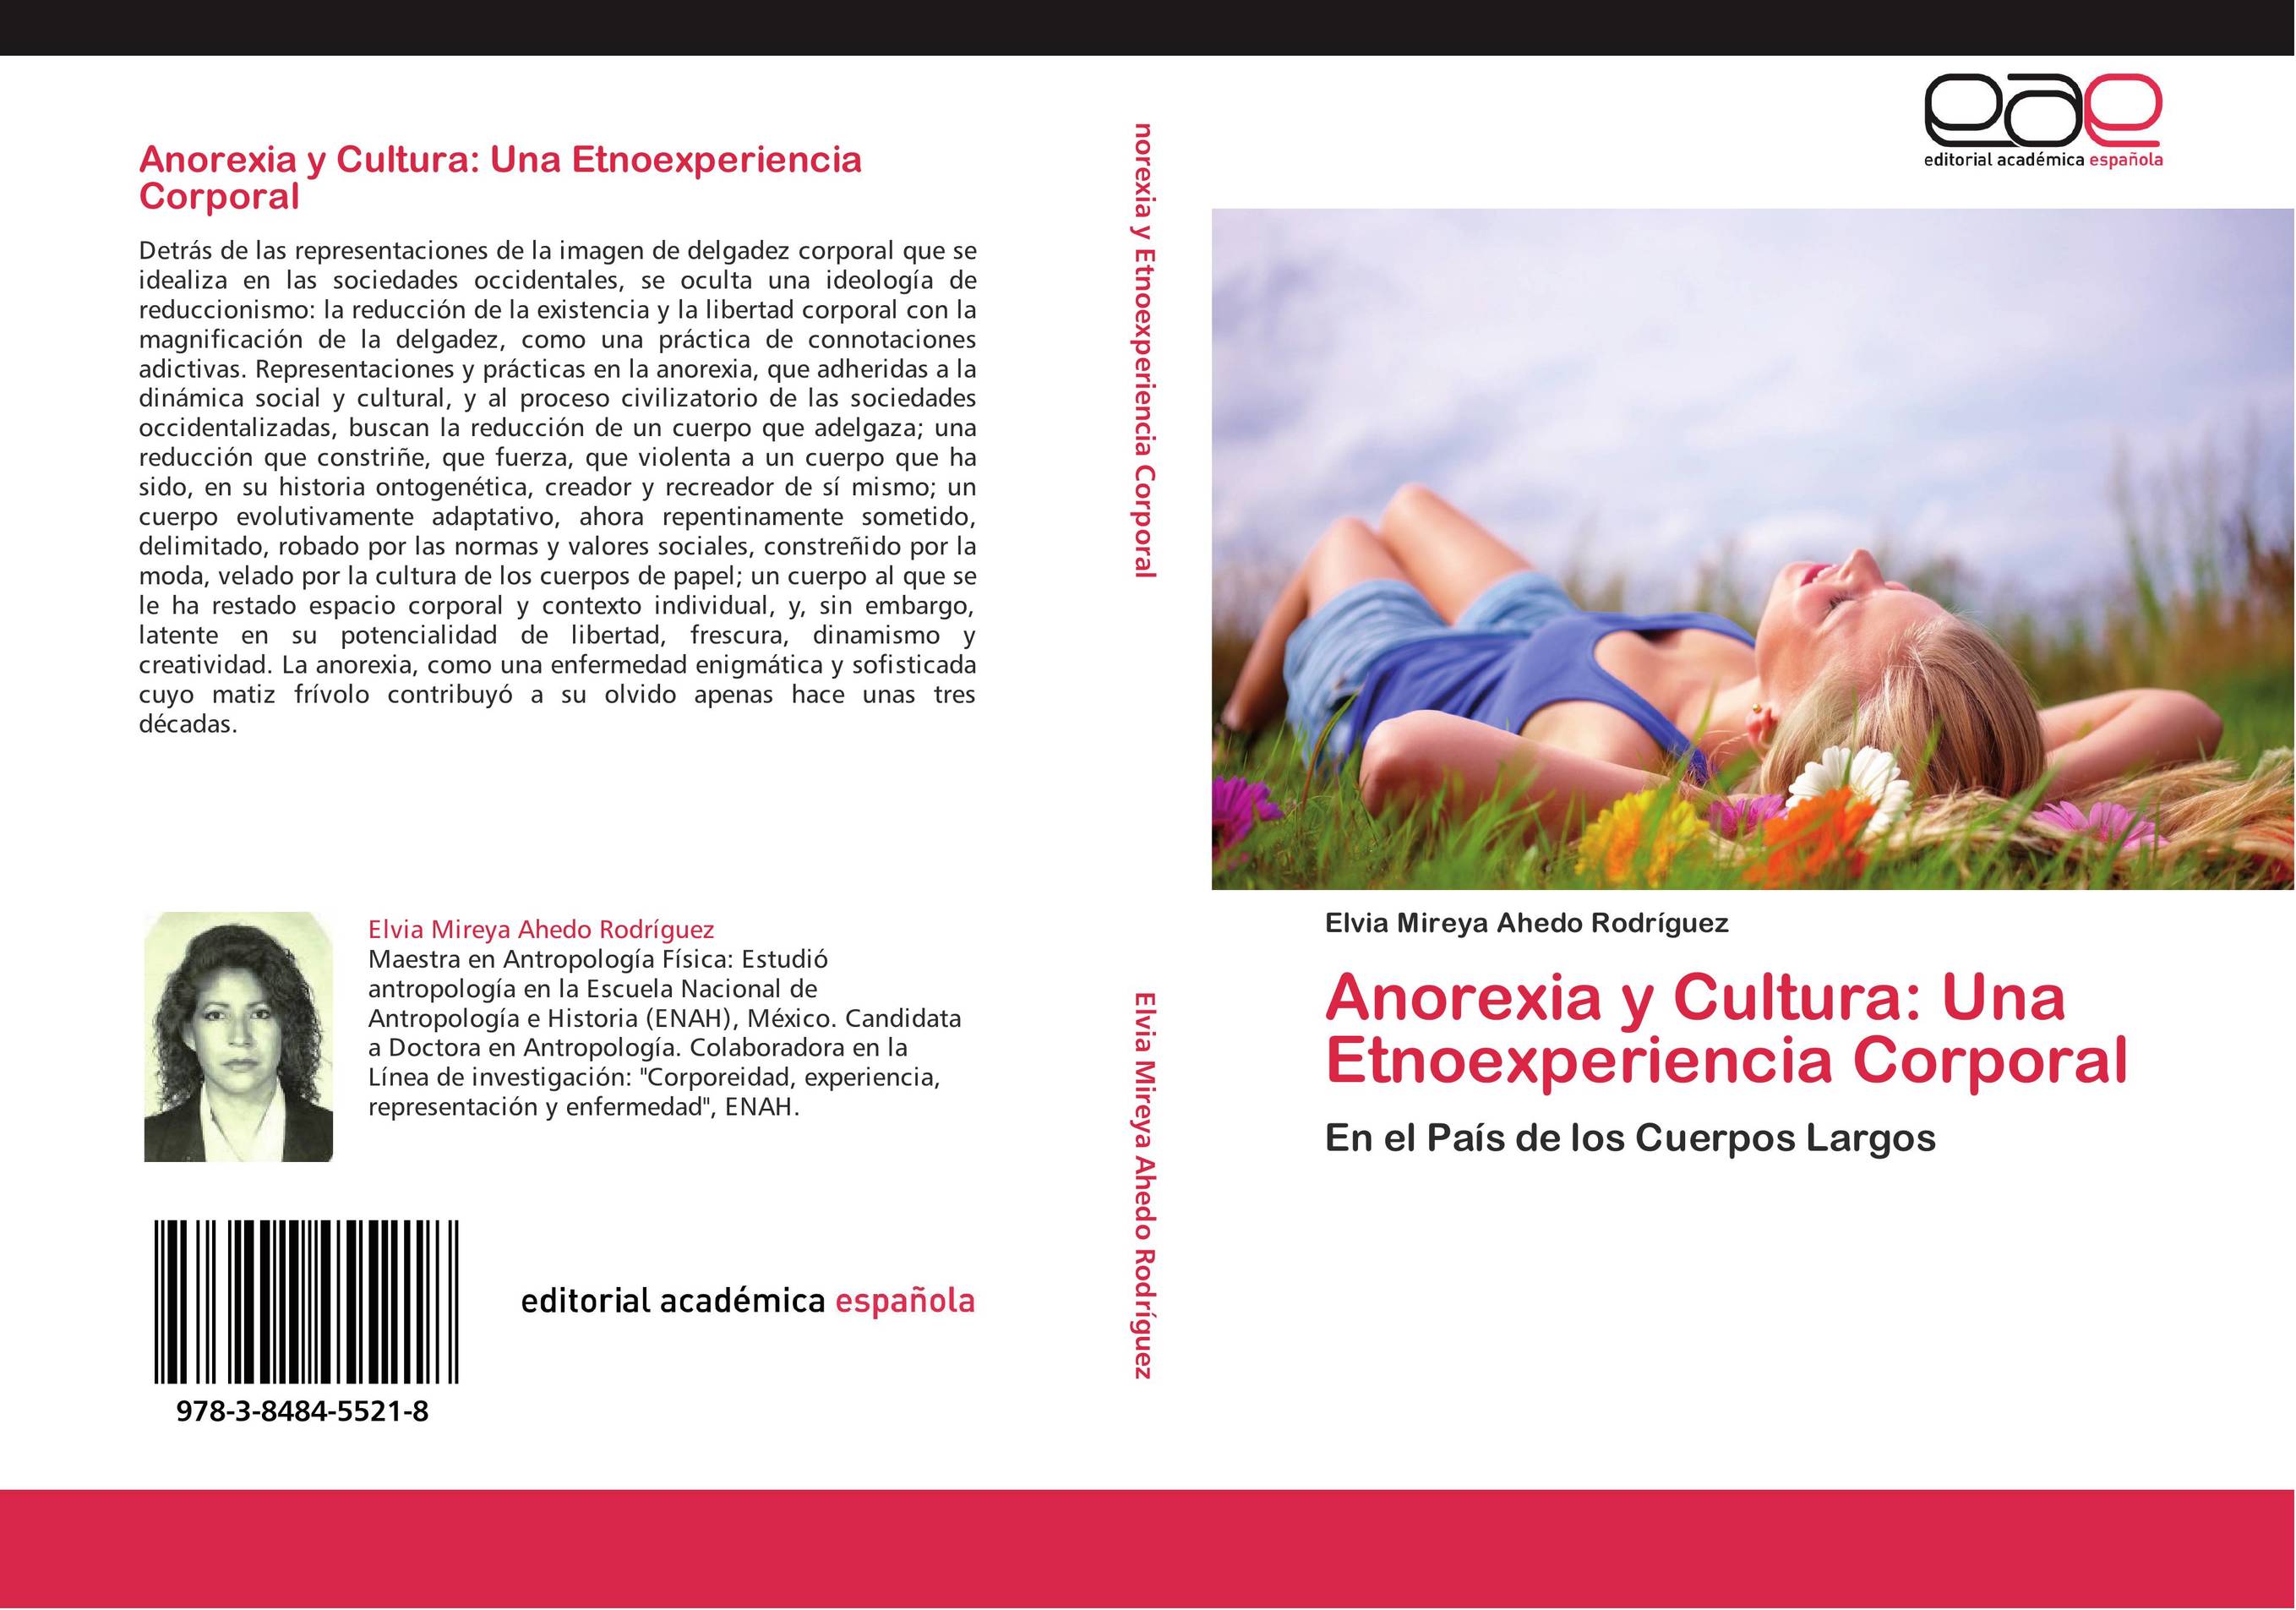 Anorexia y Cultura: Una Etnoexperiencia Corporal